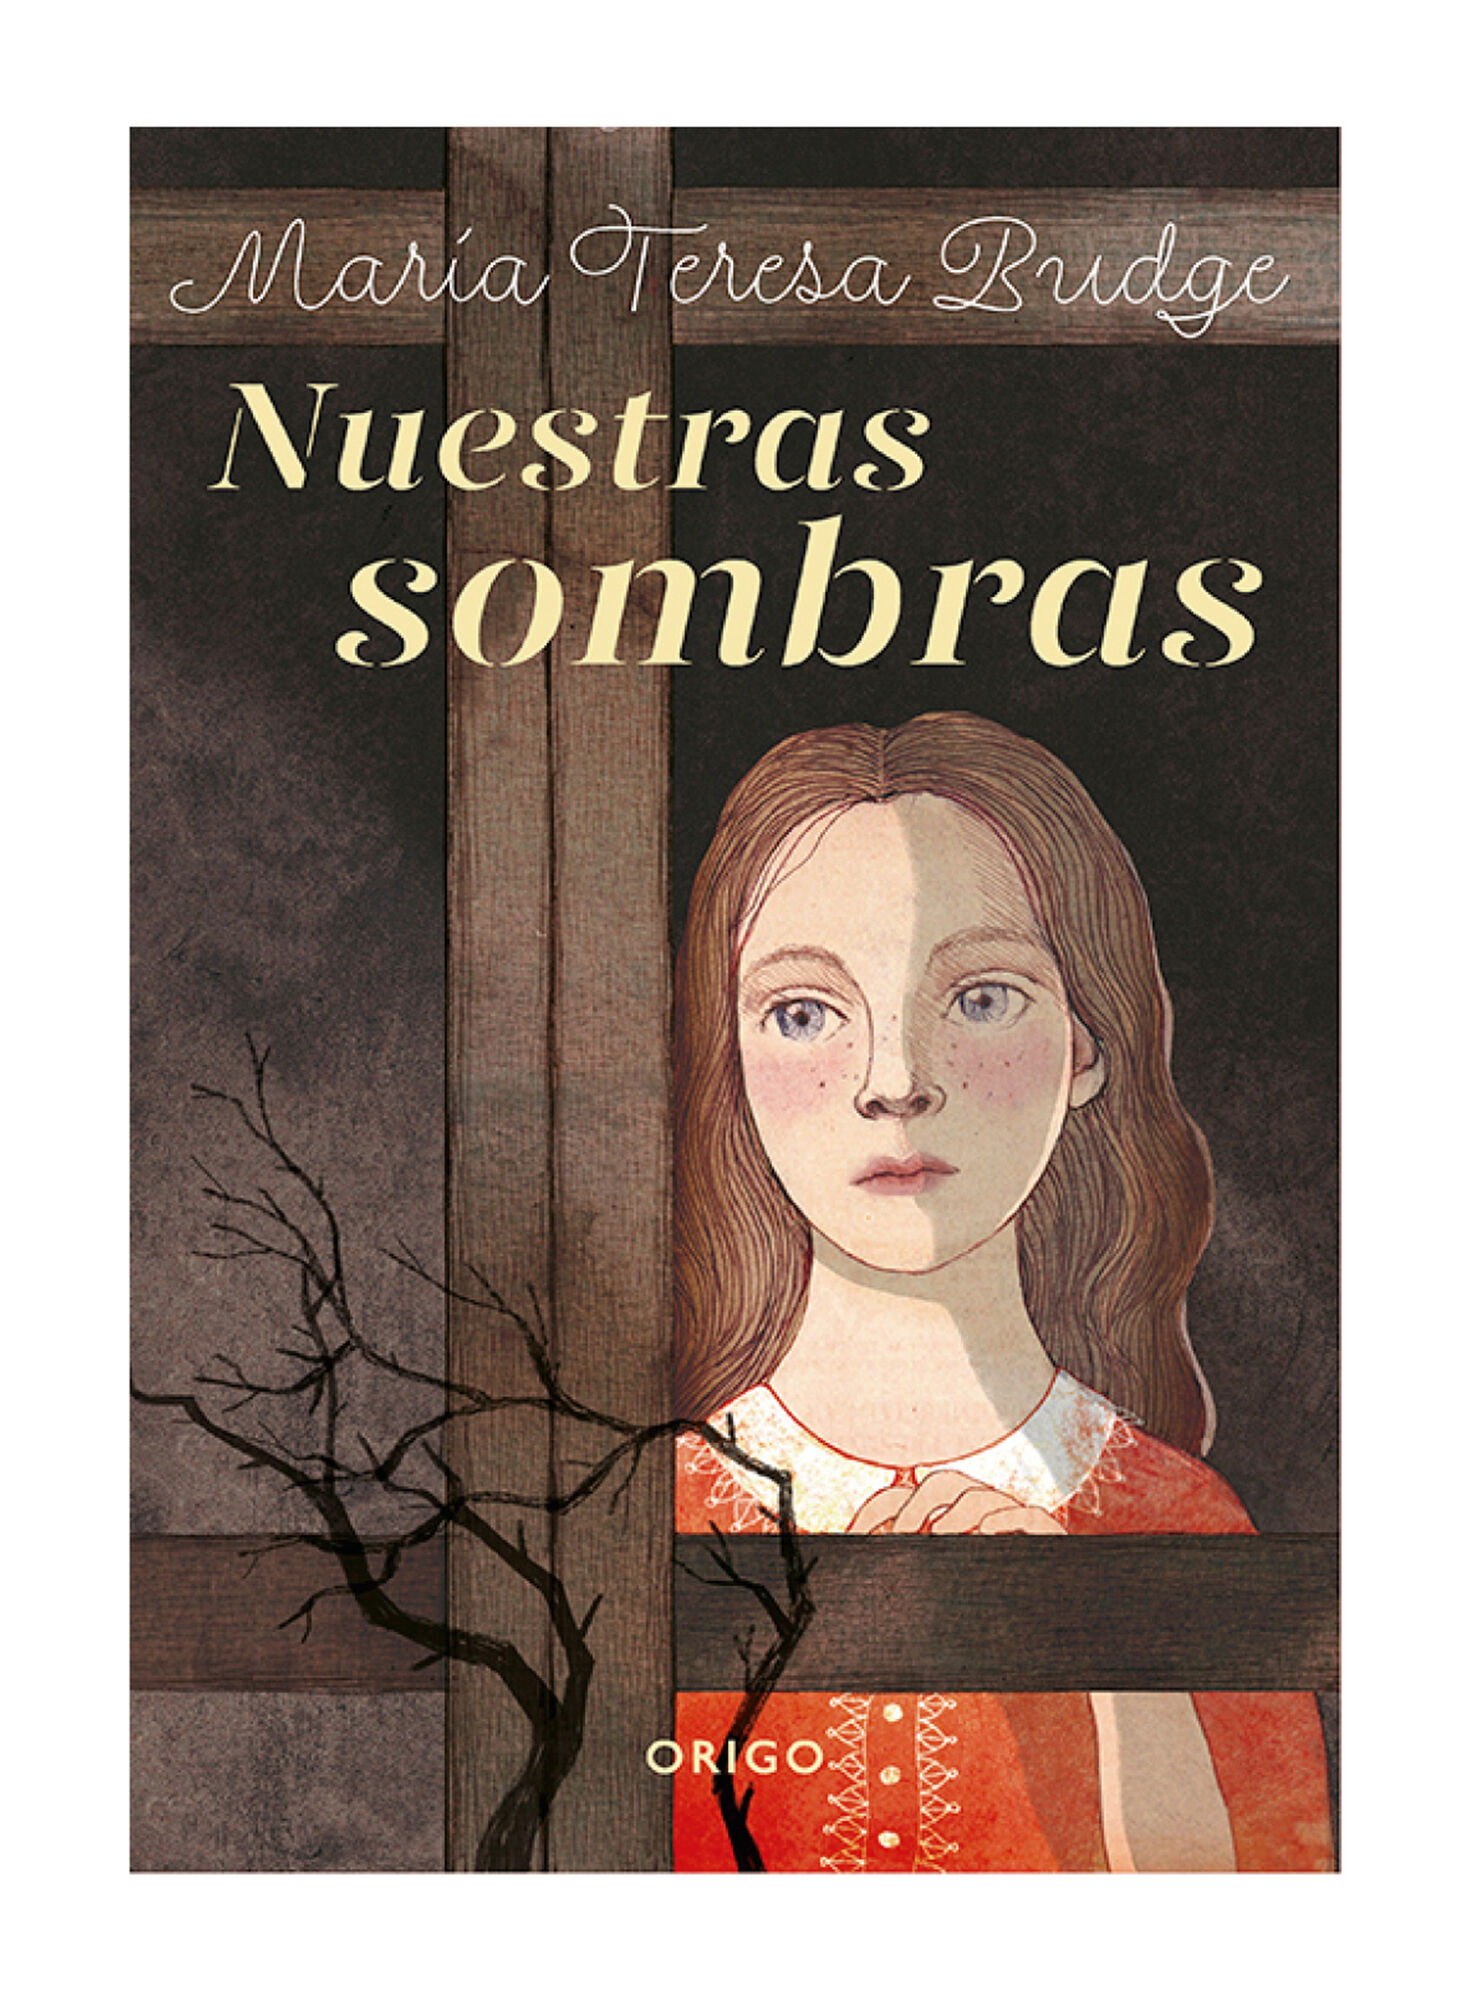 Libro Nuestras Sombras - María Teresa Budge - Libros | Paris.cl